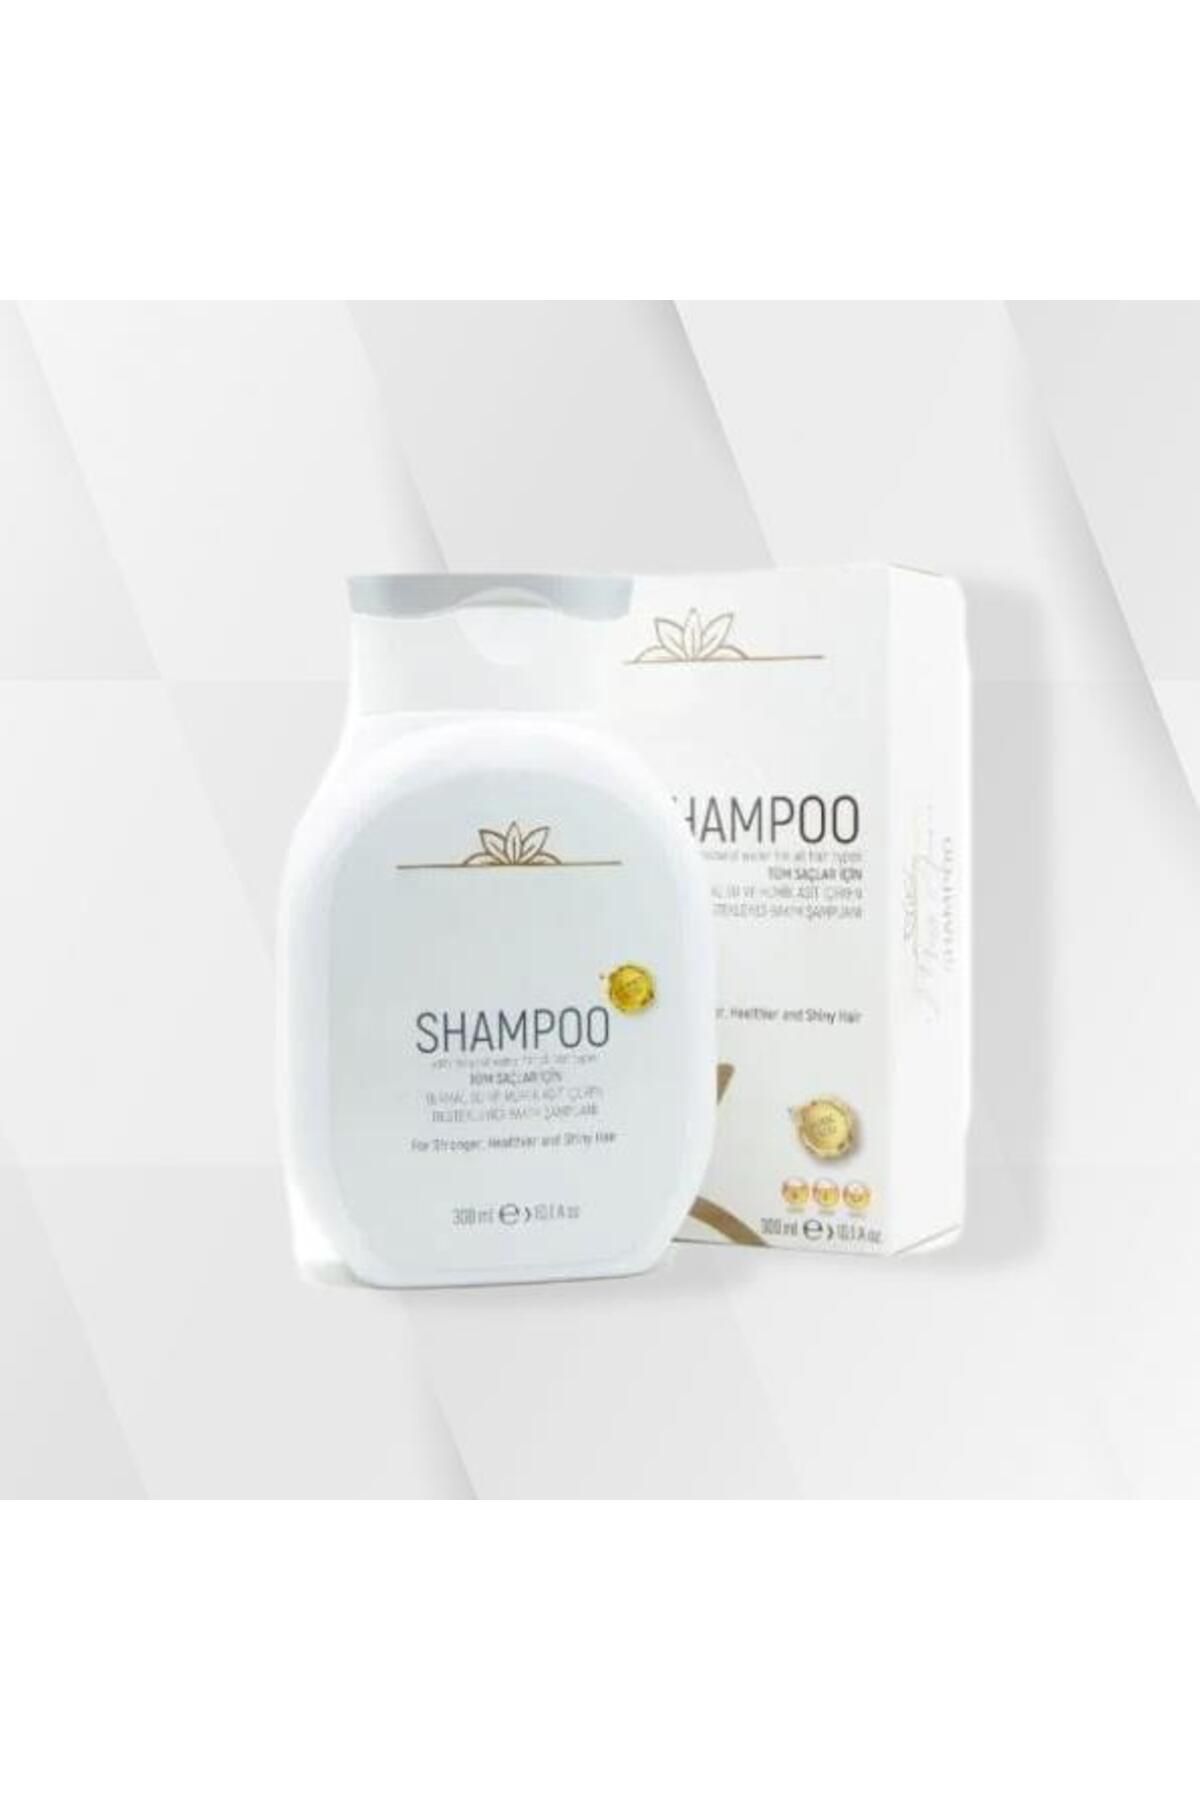 Hsport Tüm Saçlar için Şampuan – Termal Su ve Humik Asit İçeren Destekleyici, 300 ml